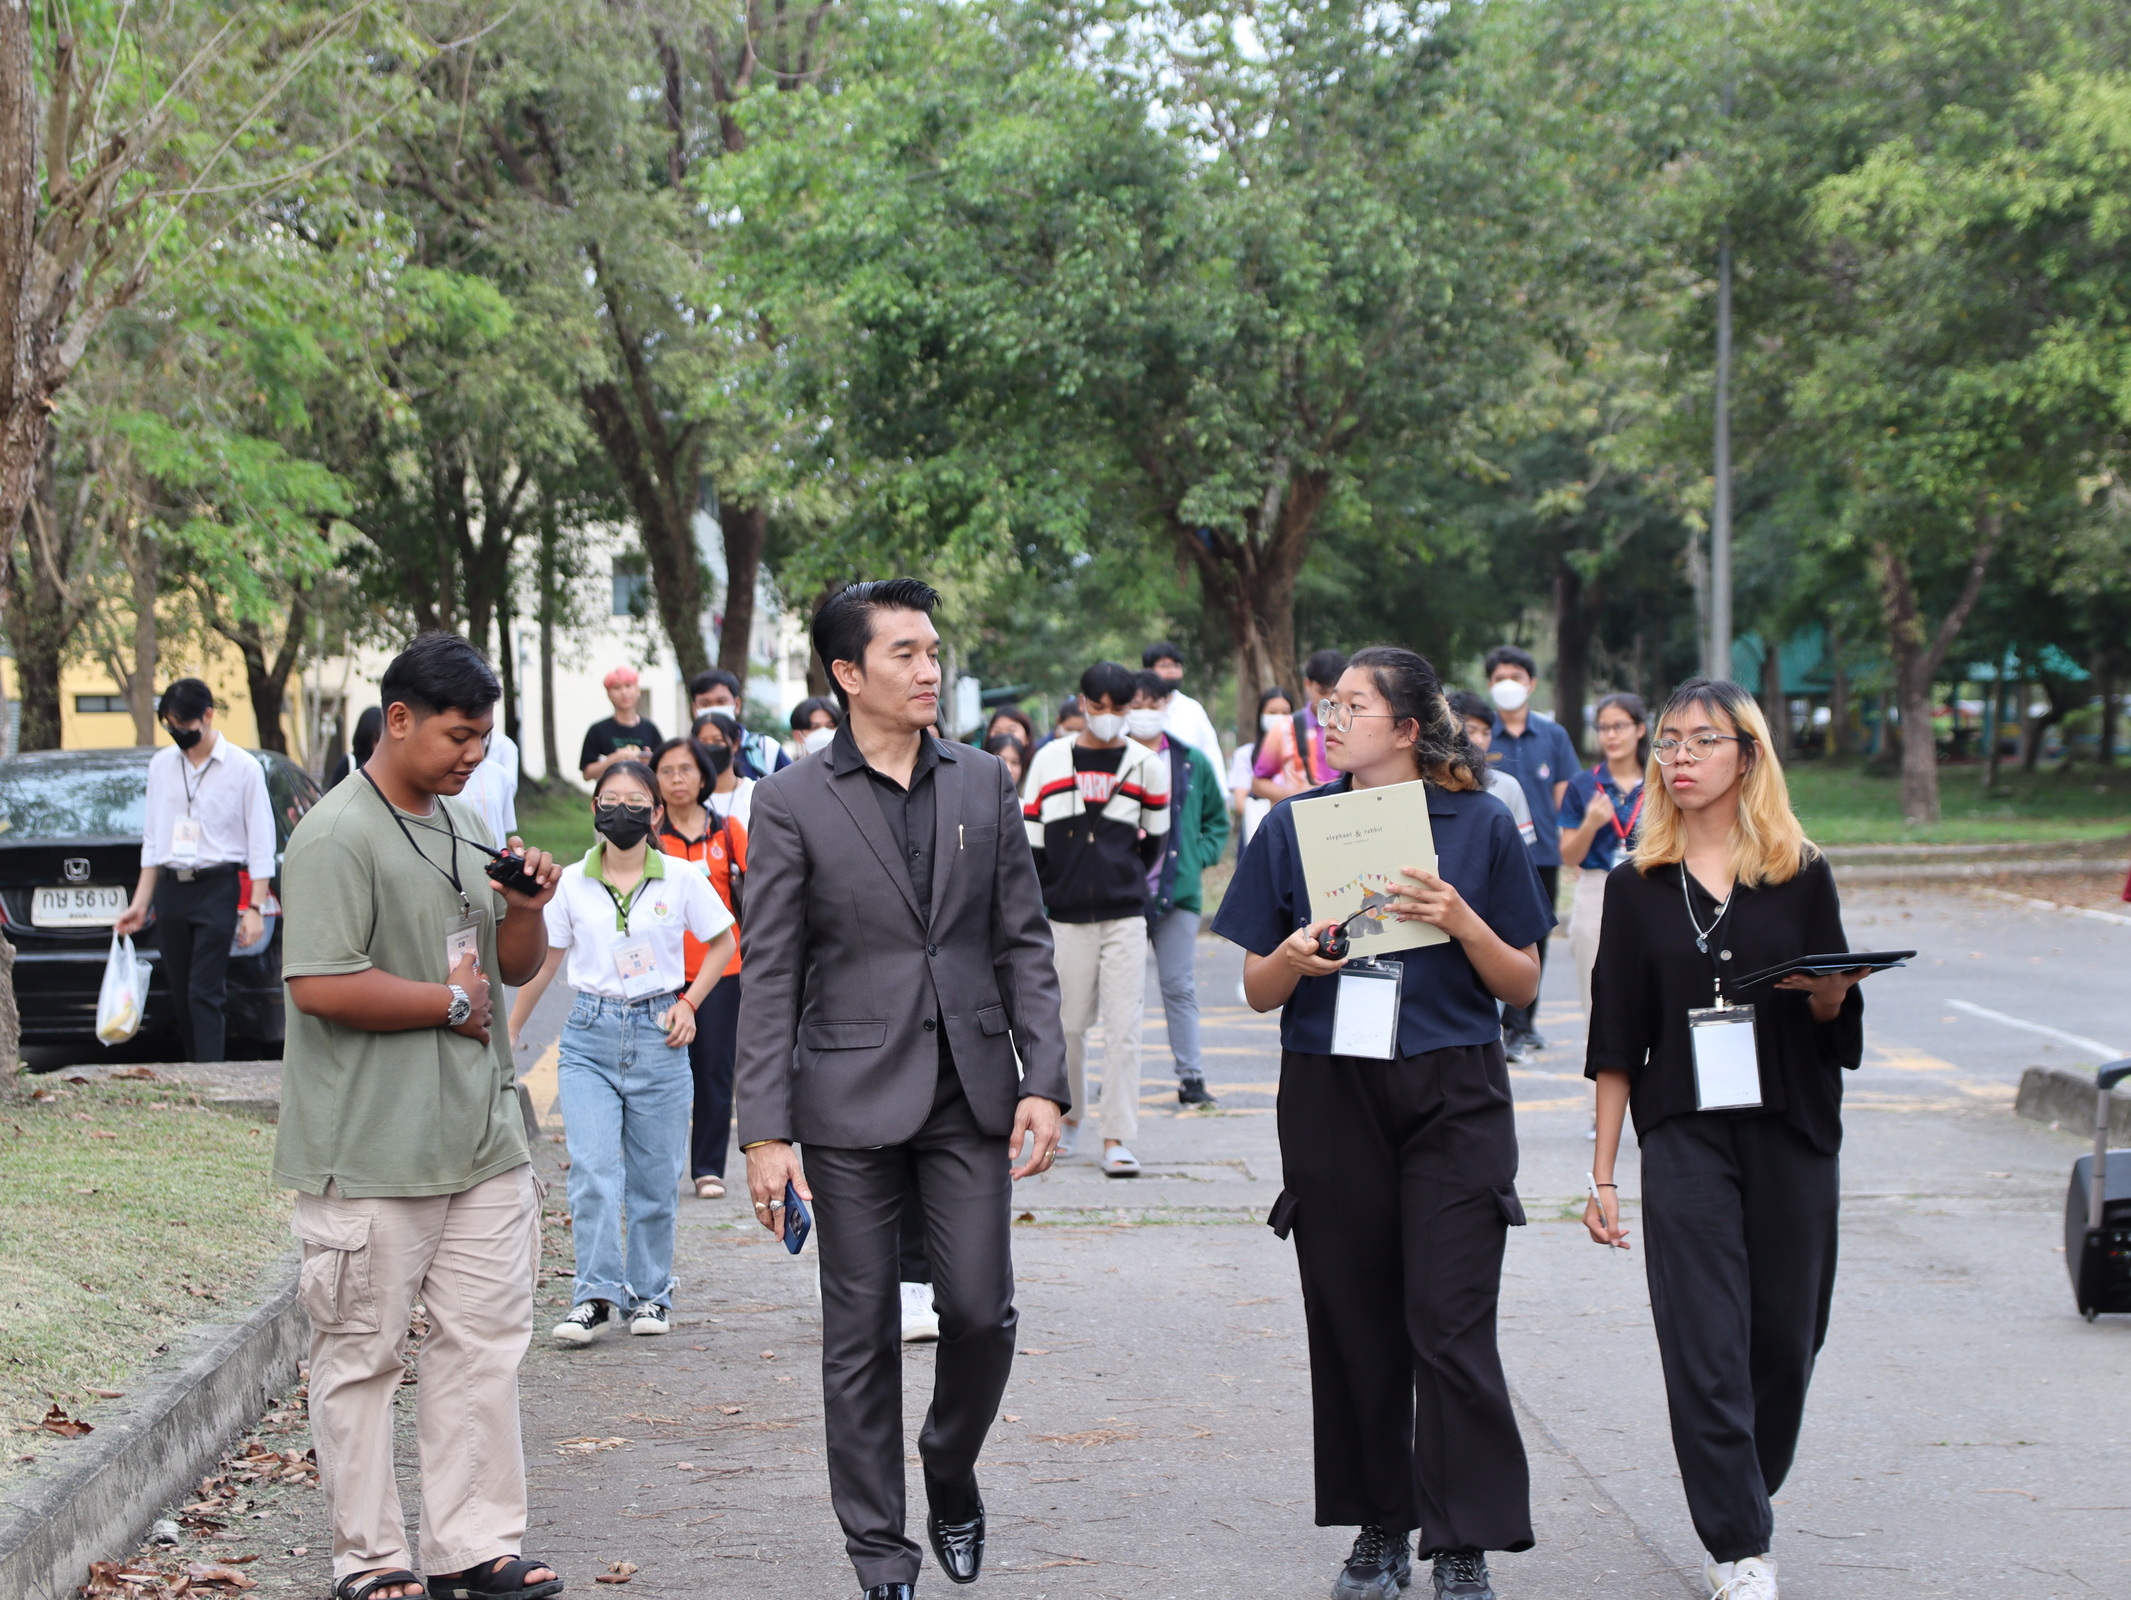 นักศึกษาและรองอธิการบดีร่วมเดินในกิจกรรม Walk 'n Talk for Change ครั้งที่ 1